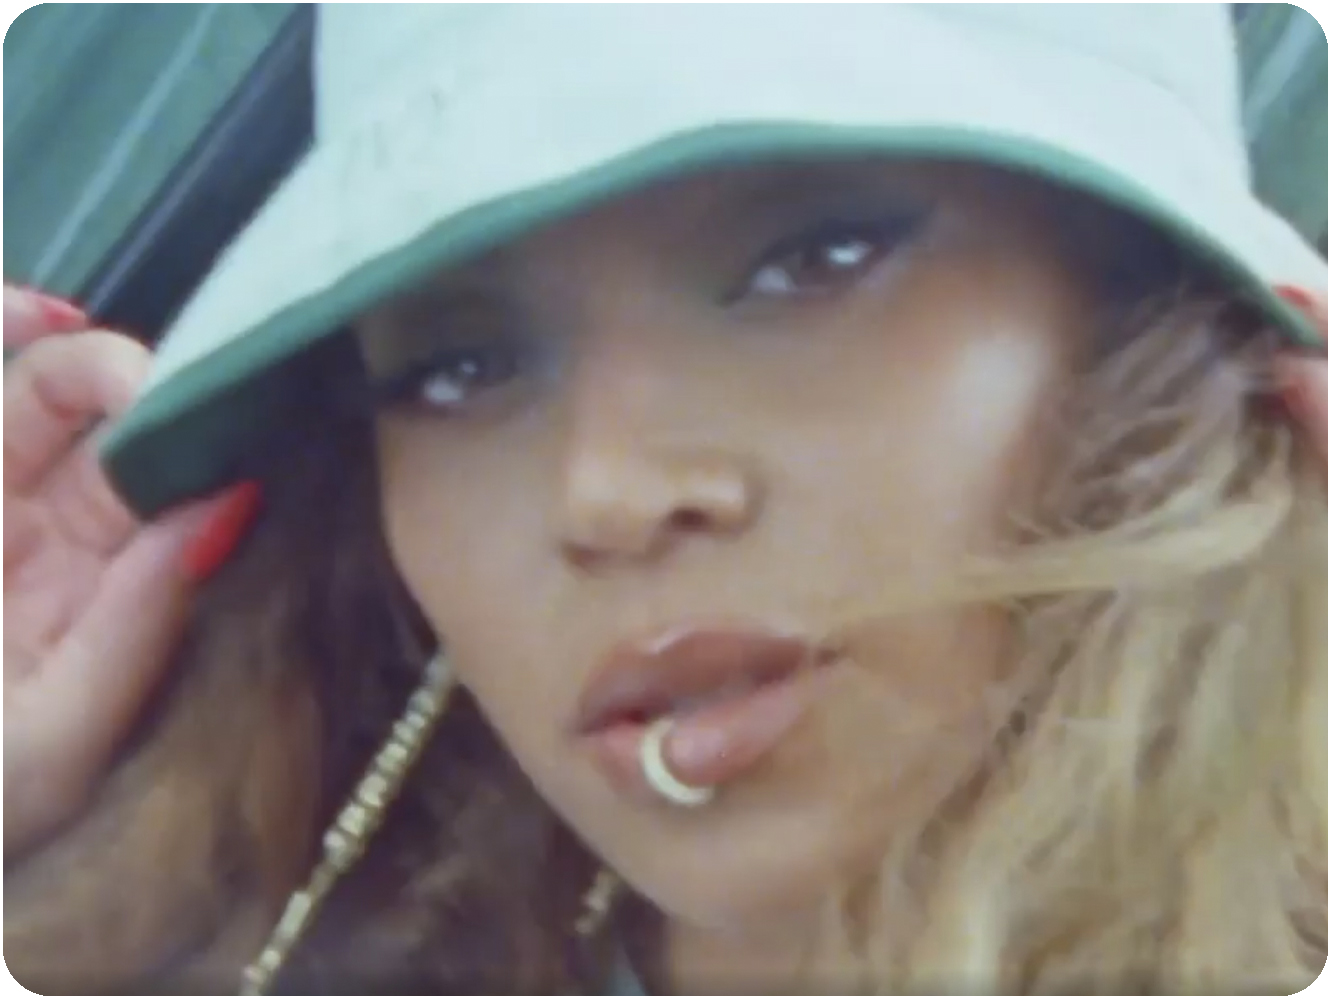  Patry Jordan fue hallada muerta tras el estreno del vídeo aeróbico de Beyoncé